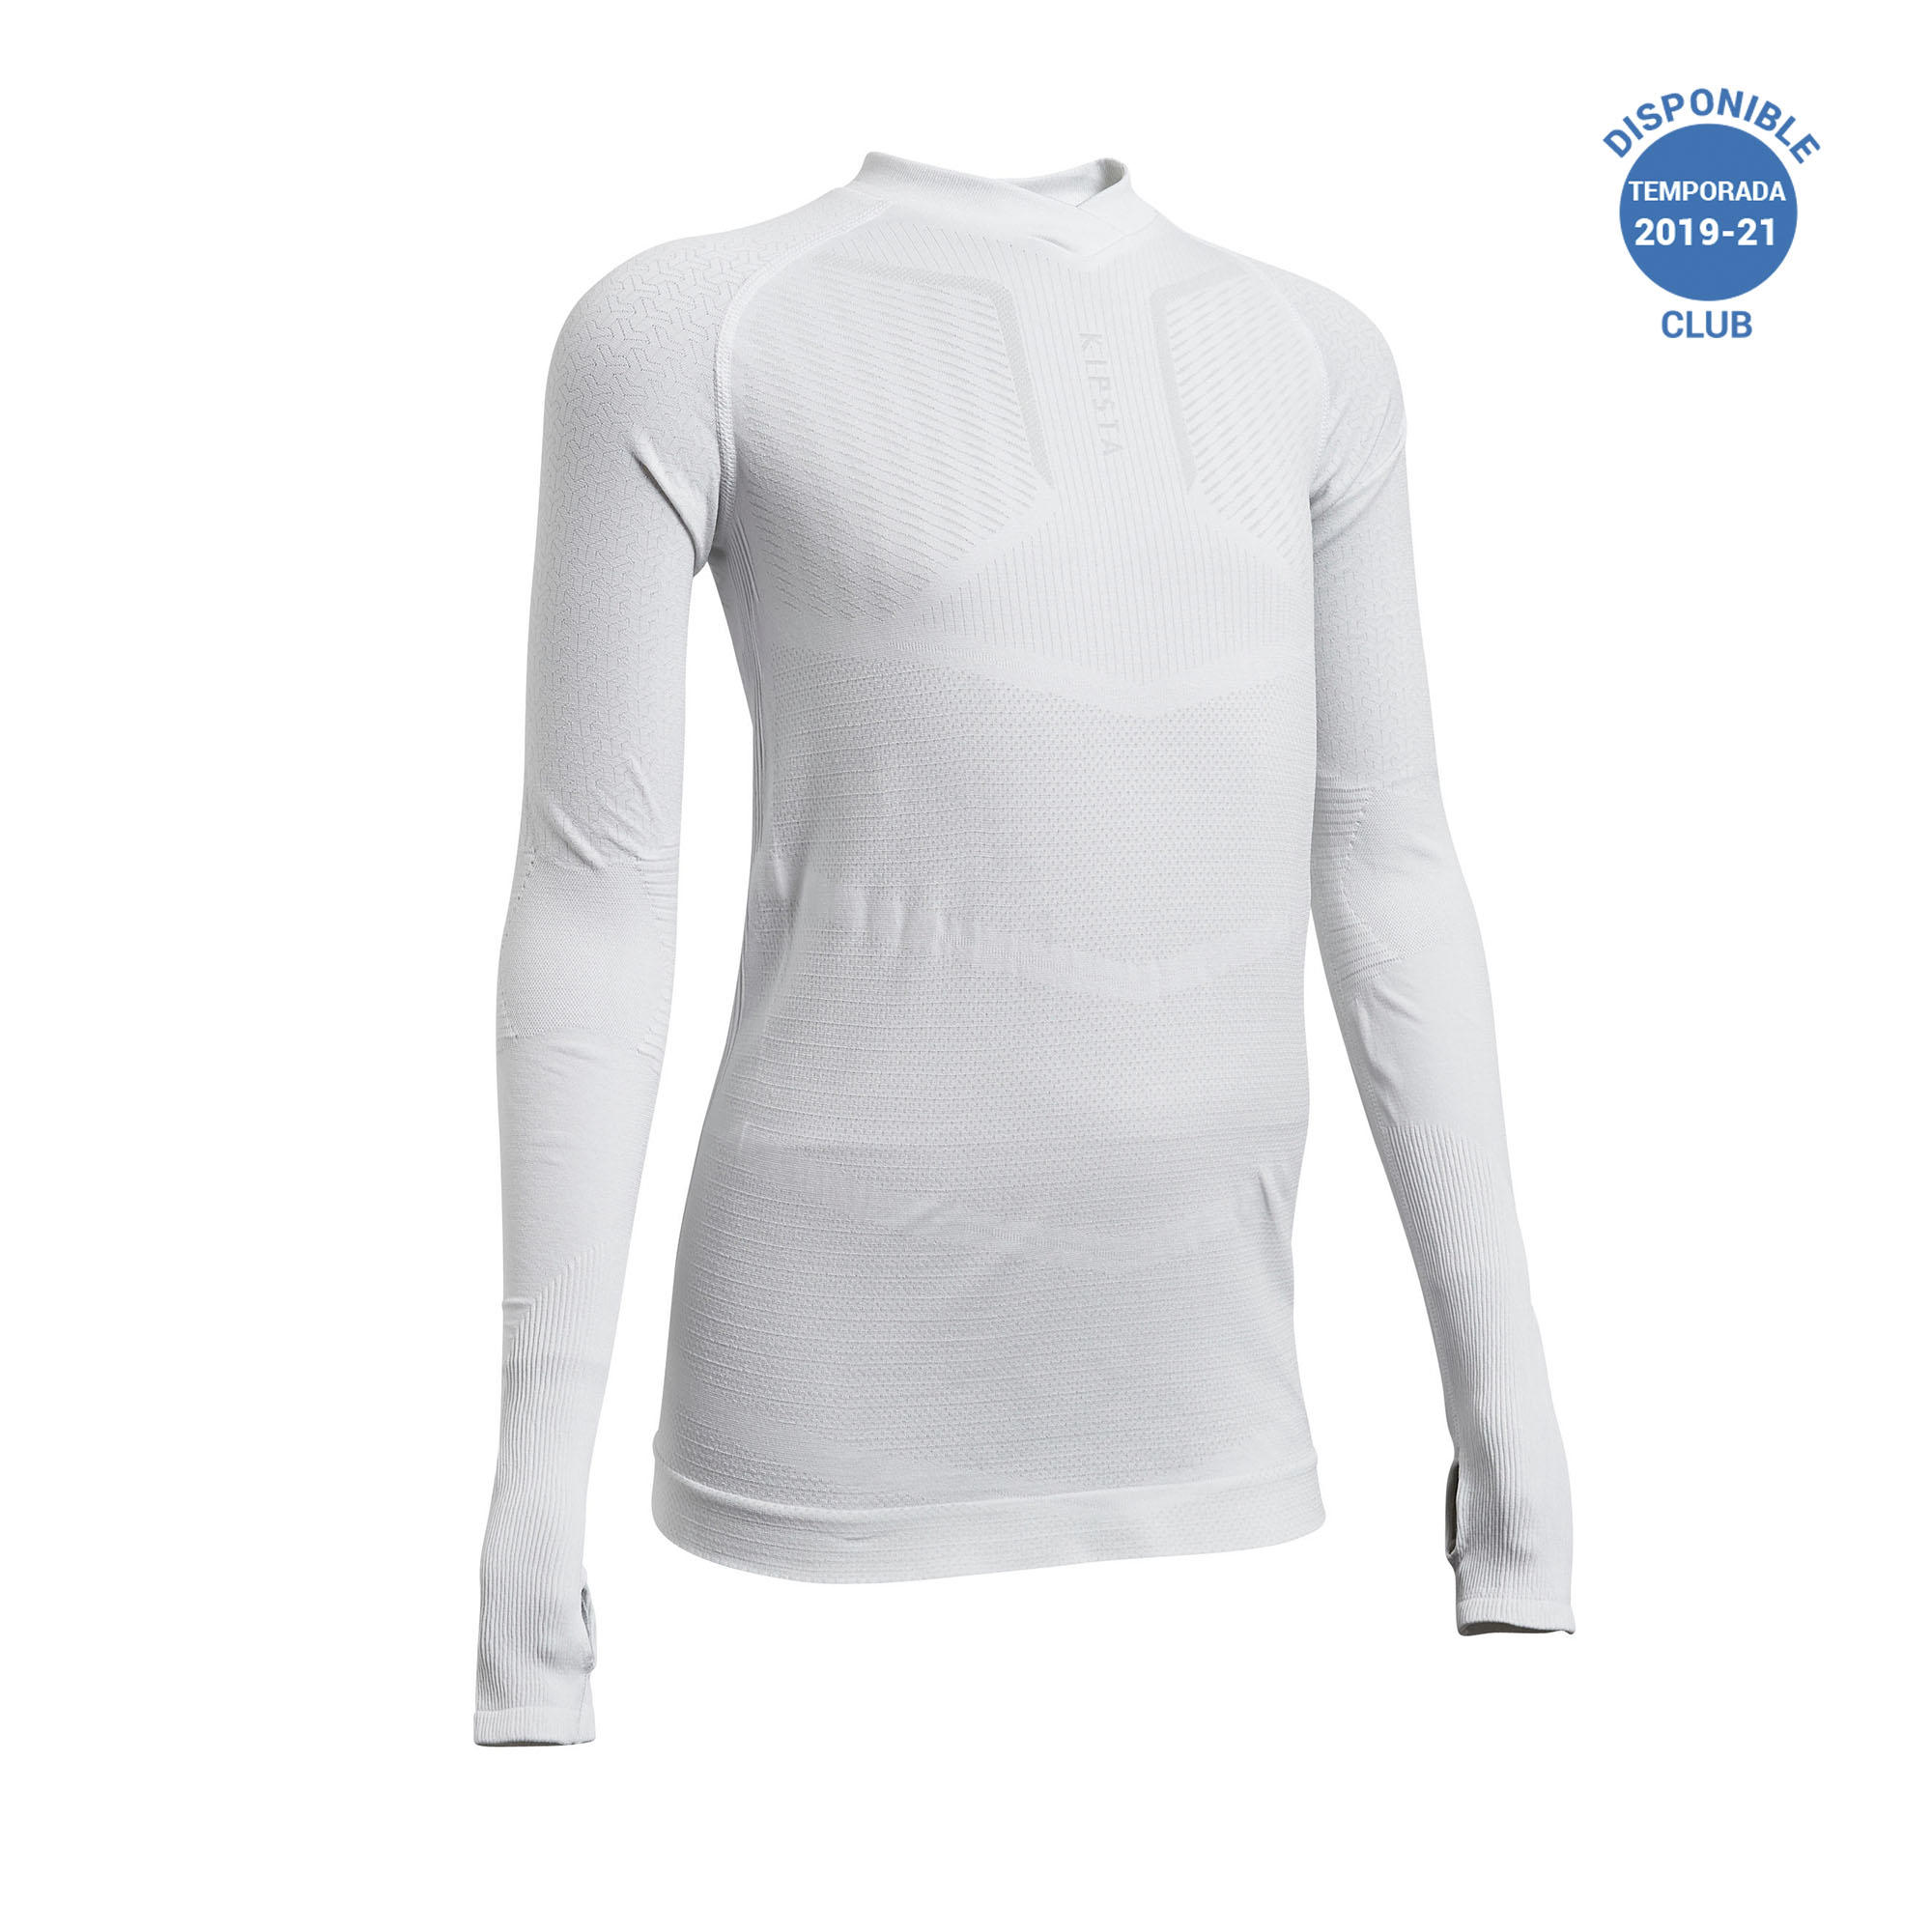 De todos modos Además Radioactivo Camiseta Termica Blanca Niña Decathlon Online Store, UP TO 60% OFF |  www.apmusicales.com